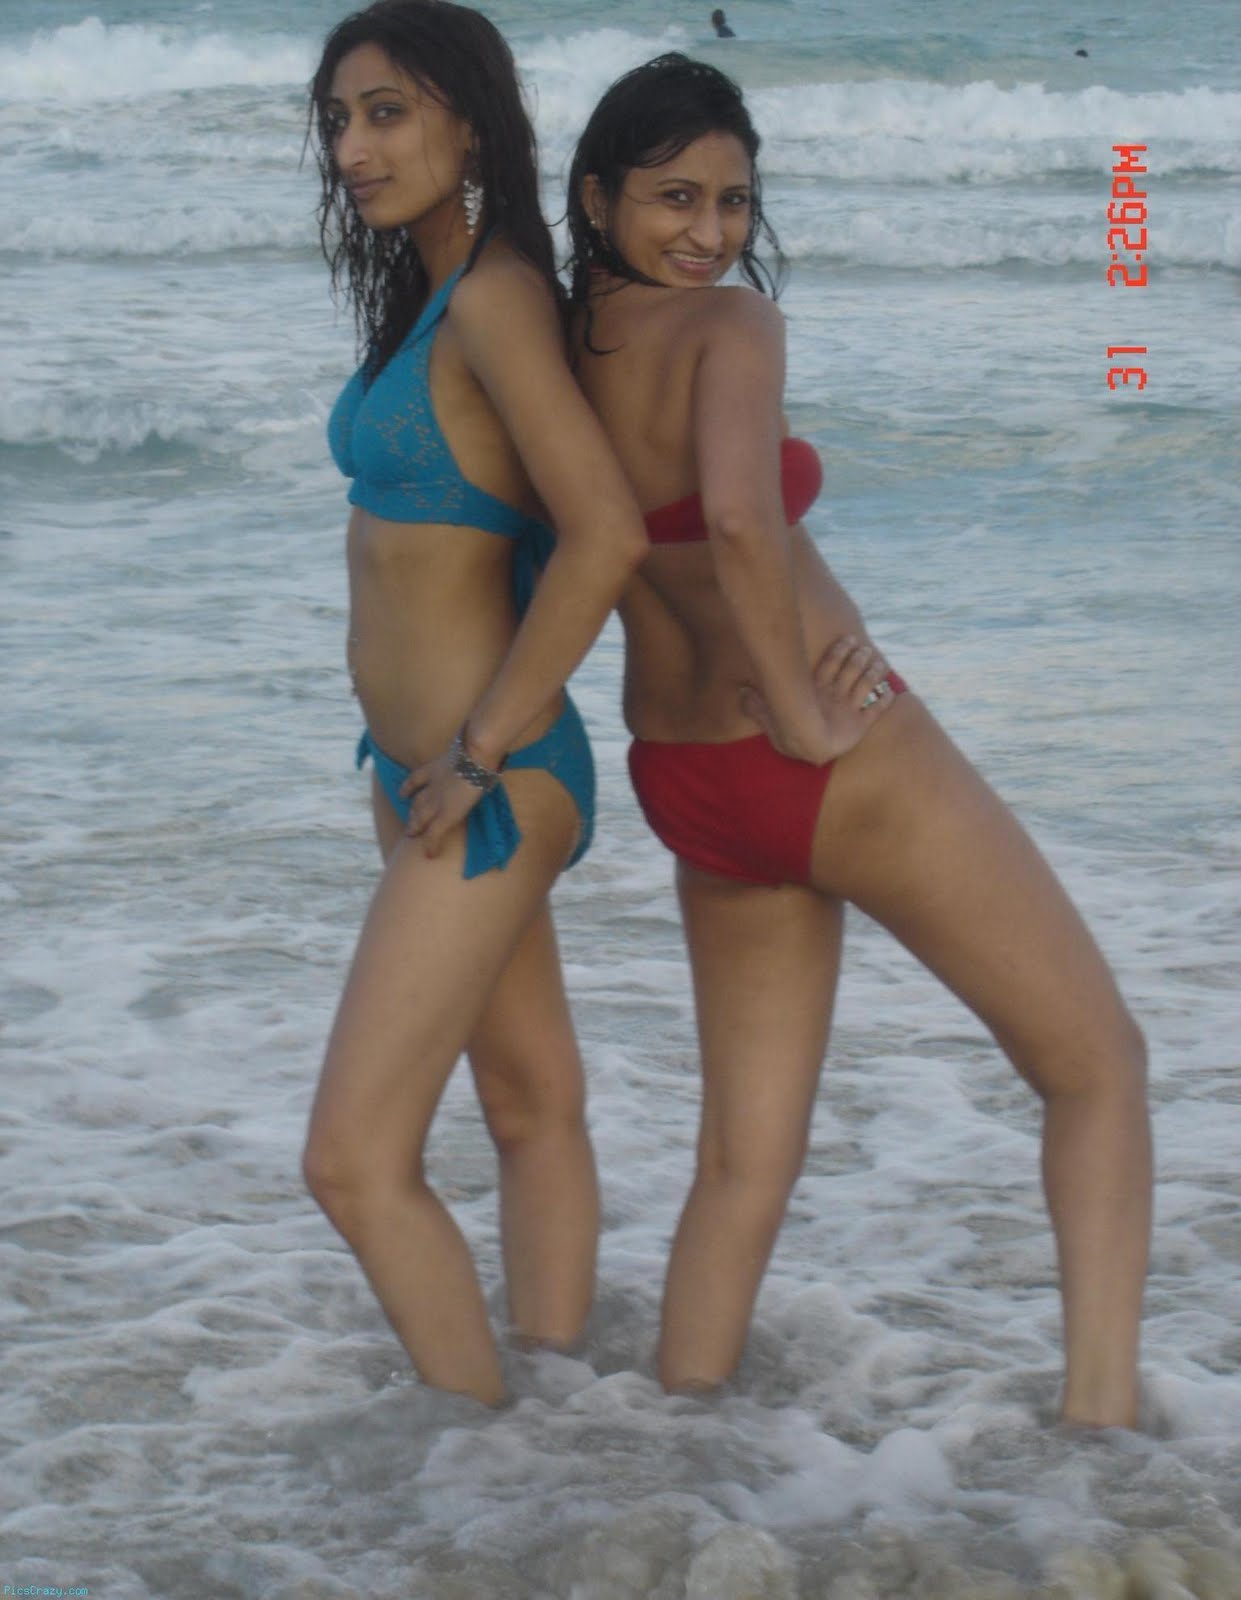 Desi Hot Beach Girls - Desi Hot Beach Girls | Sex Pictures Pass